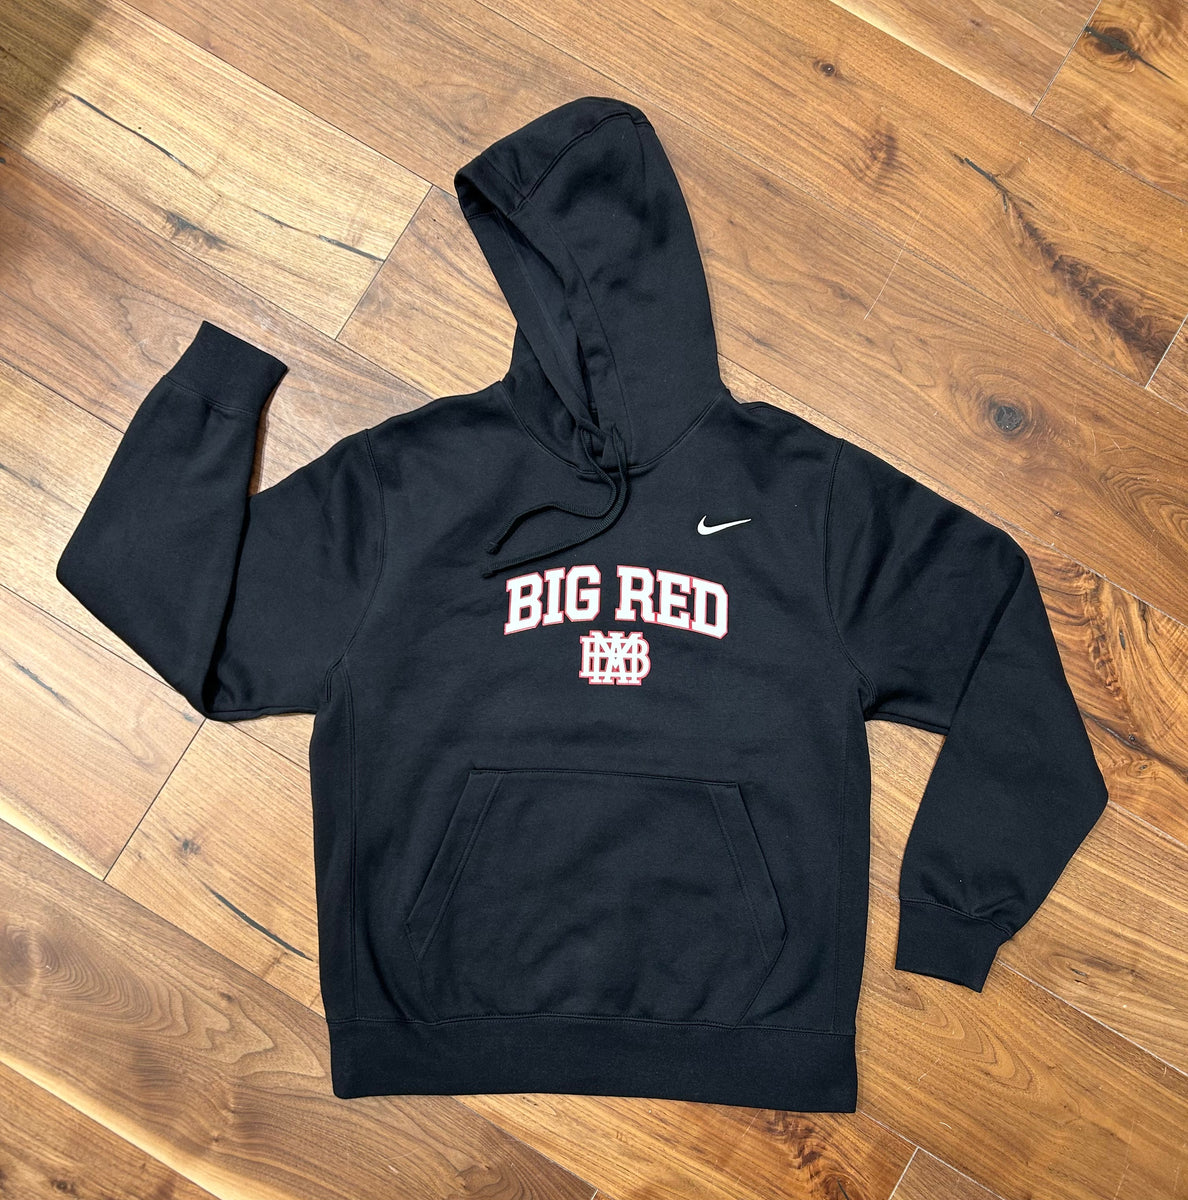 Nike Youth/Adult Black Hooded Sweatshirt w/ White Big Red – MBA